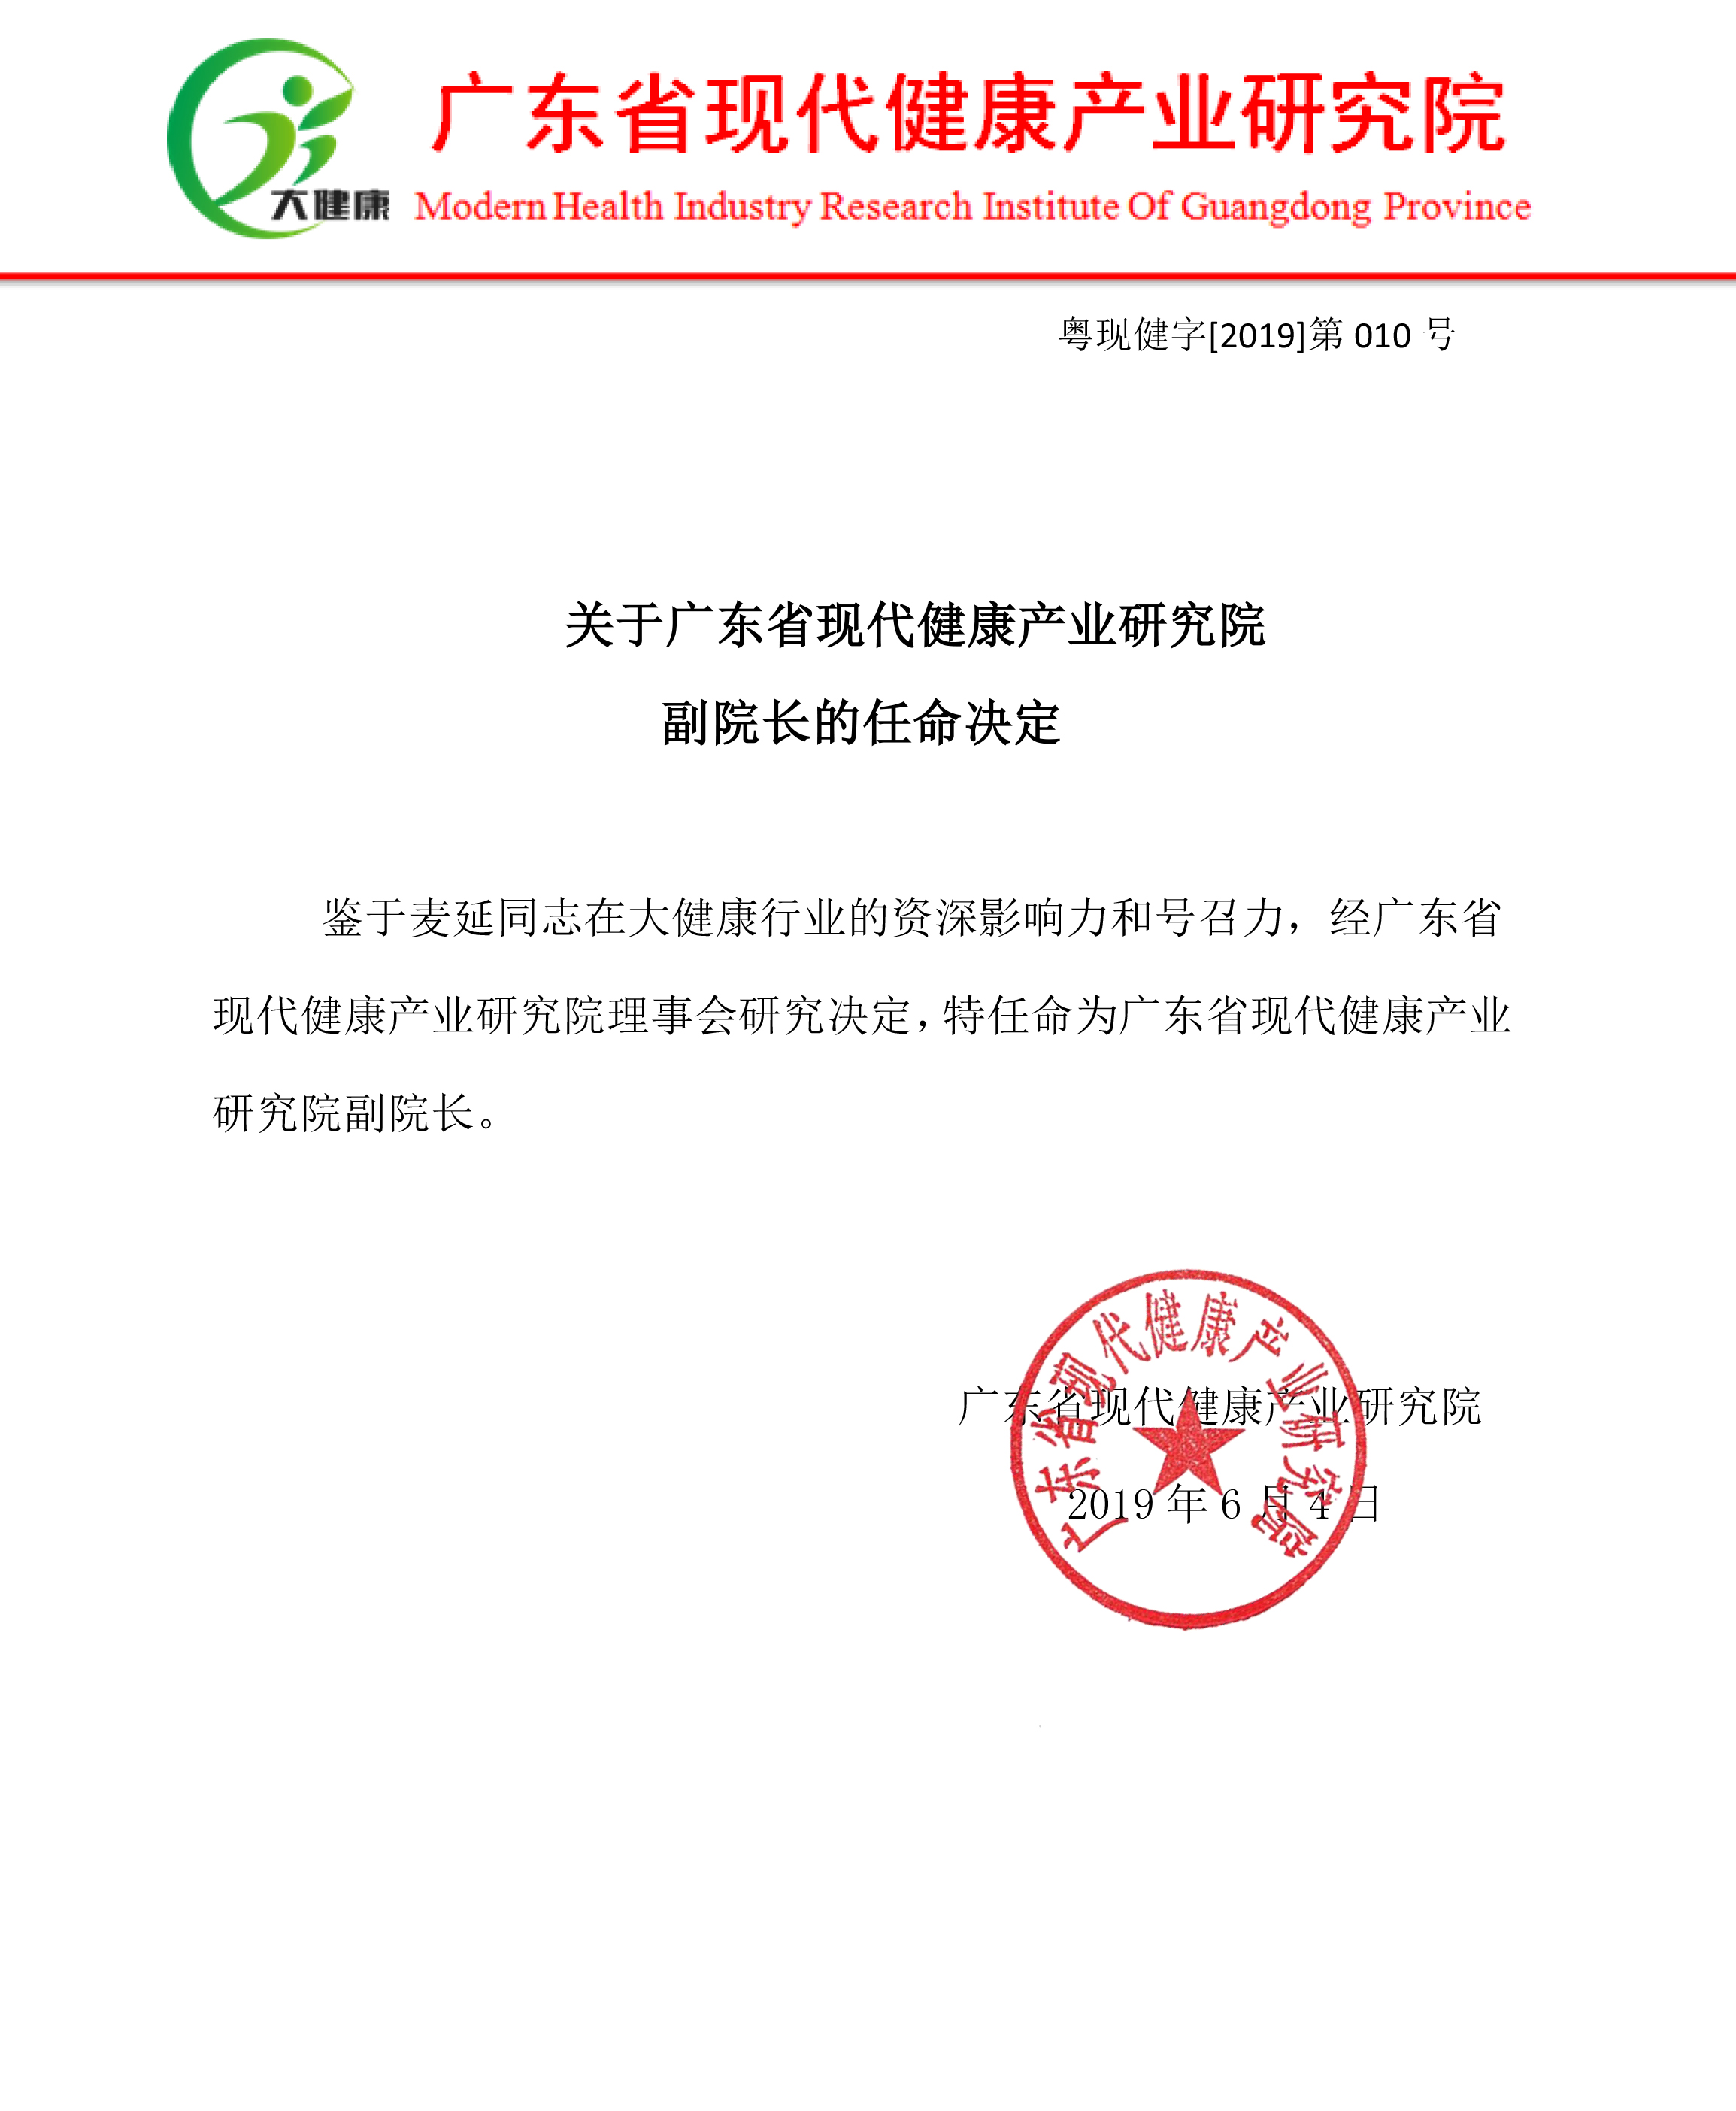 关于广东省现代健康产业研究院副院长的任命决定